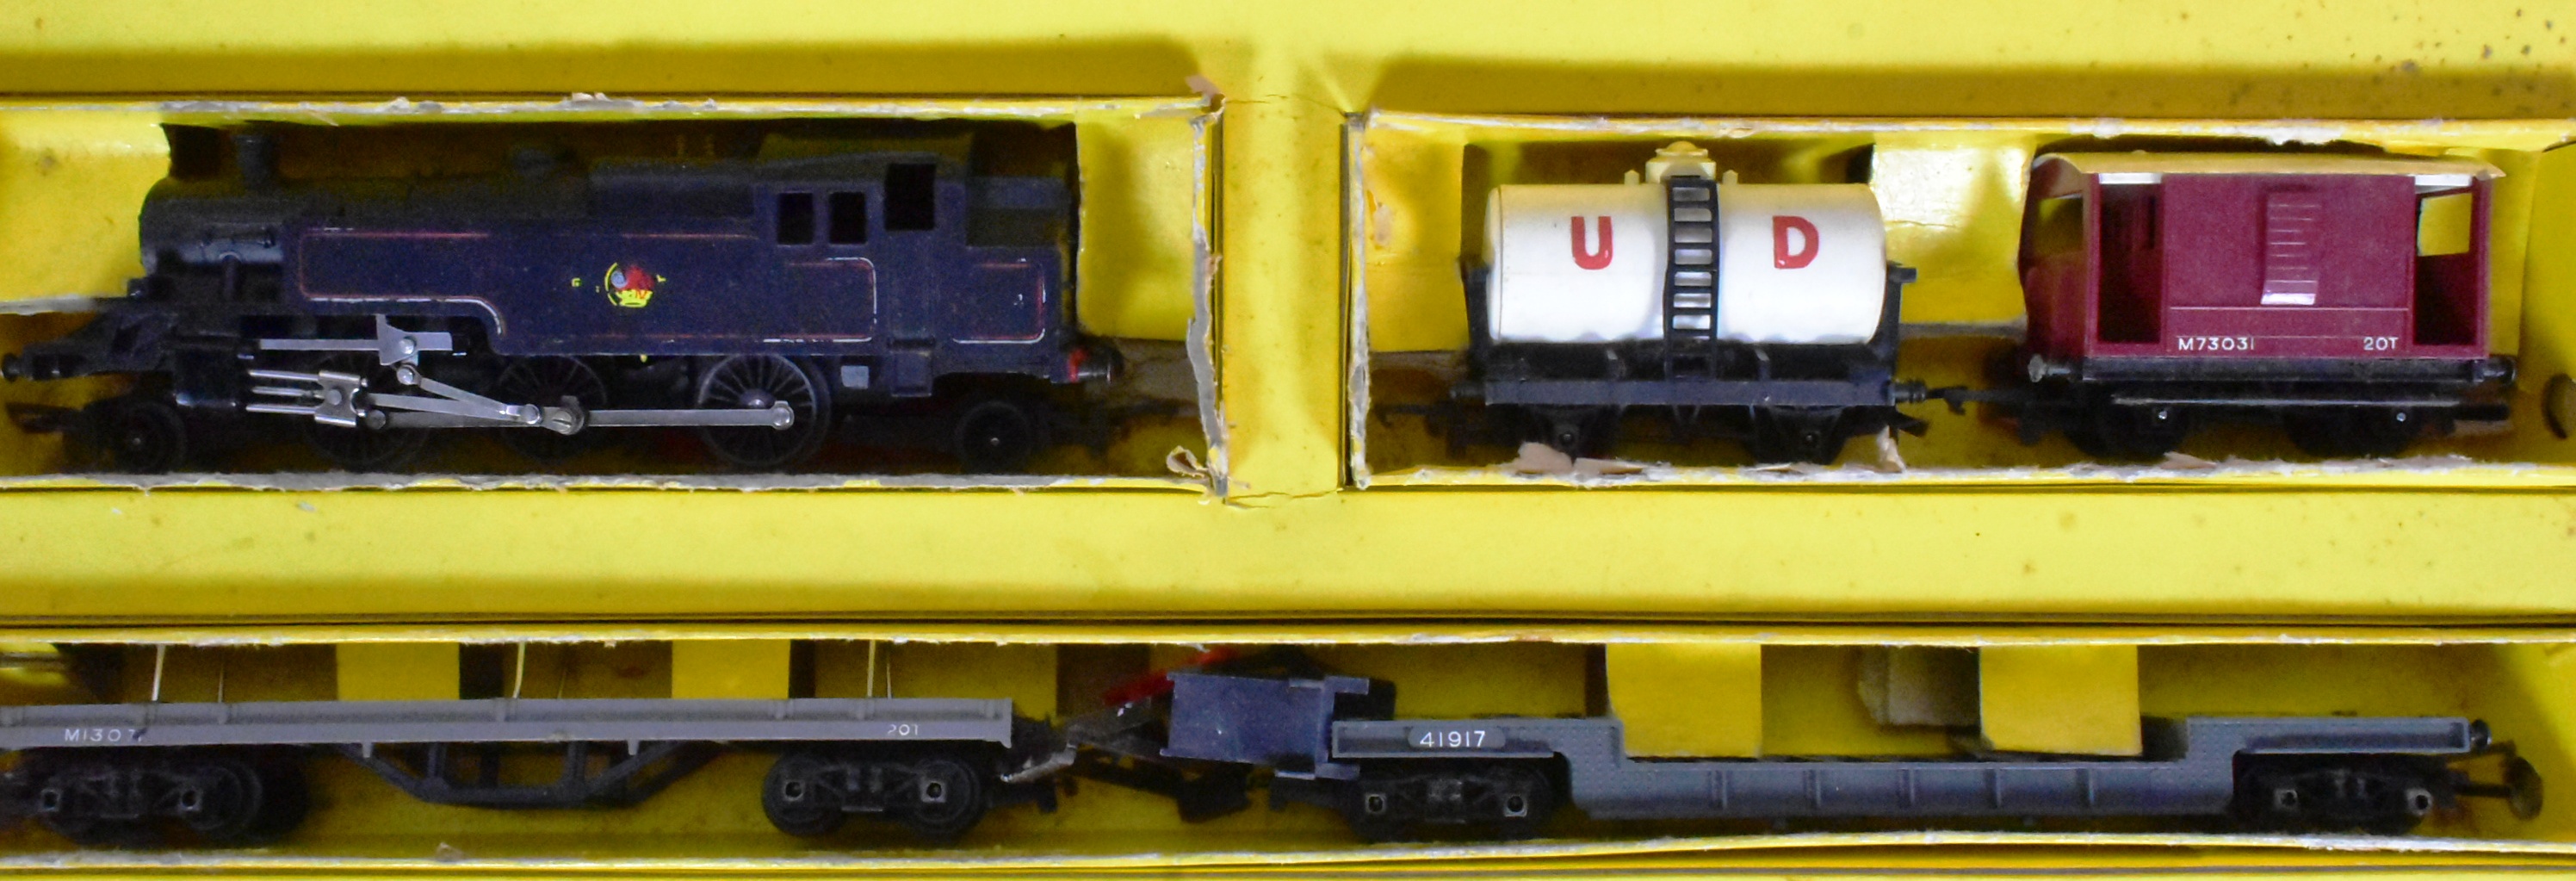 MODEL RAILWAY - COLLECTION OF TRIANG OO GAUGE - Bild 3 aus 7